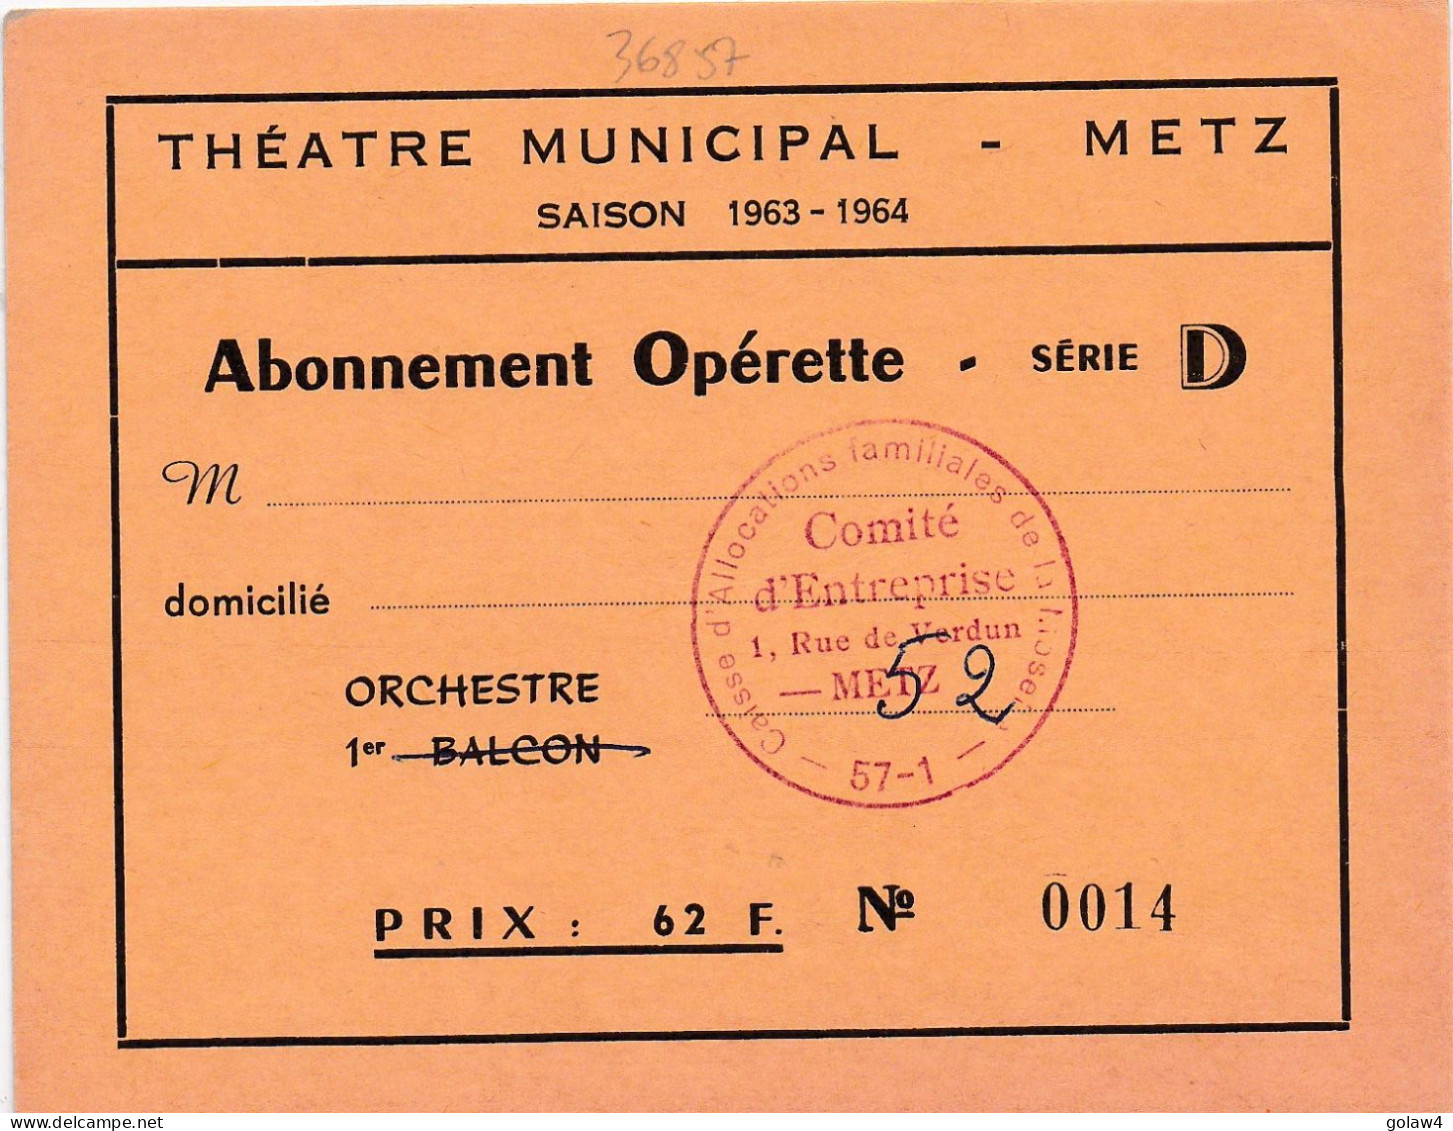 36857 THEATRE MUNICIPAL METZ SAISON 1963 1964 ABONNEMENT OPERETTE SERIE ORCHESTRE CAISSE ALLOCATIONS FAMILIALLES MOSELLE - Eintrittskarten